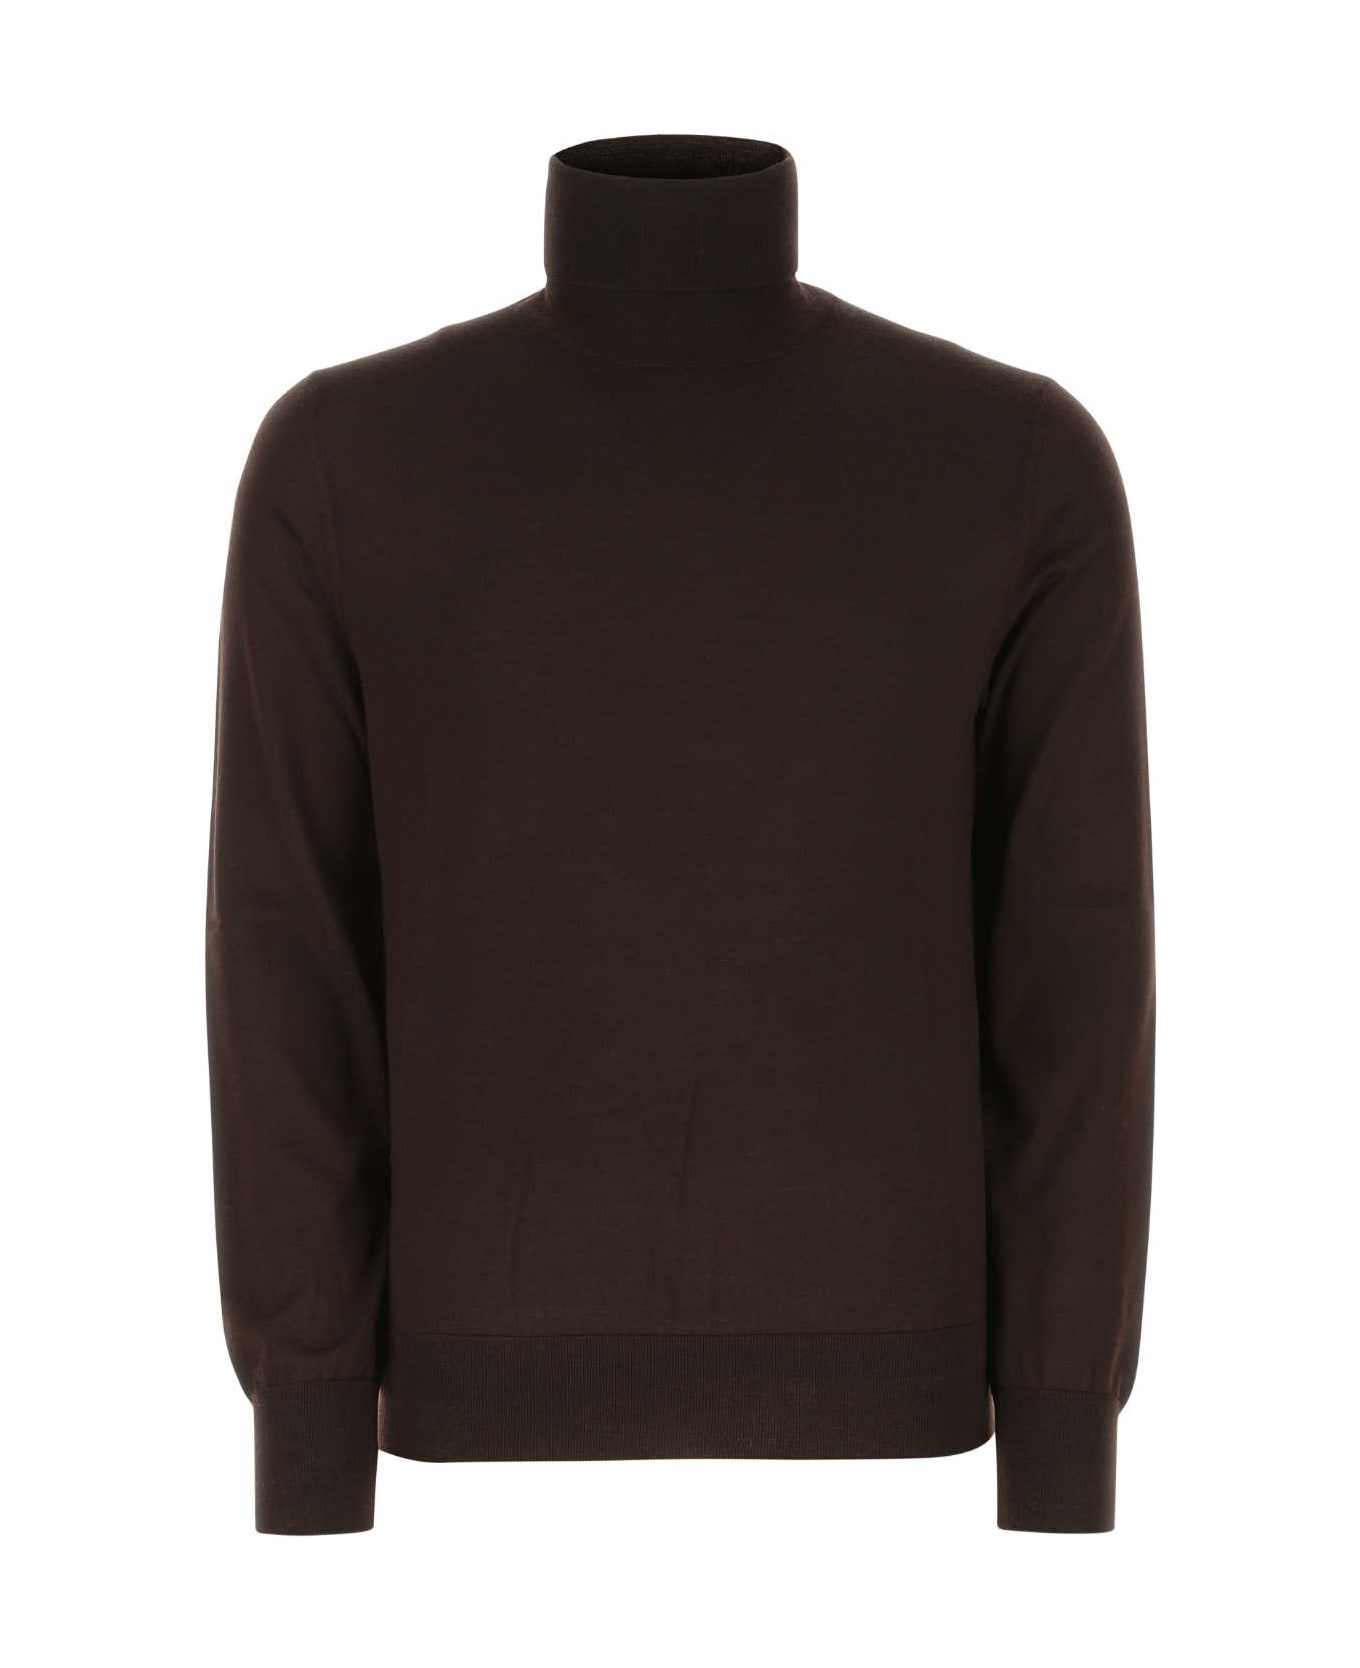 Dolce & Gabbana Dark Brown Cashmere Blend Sweater - M0682